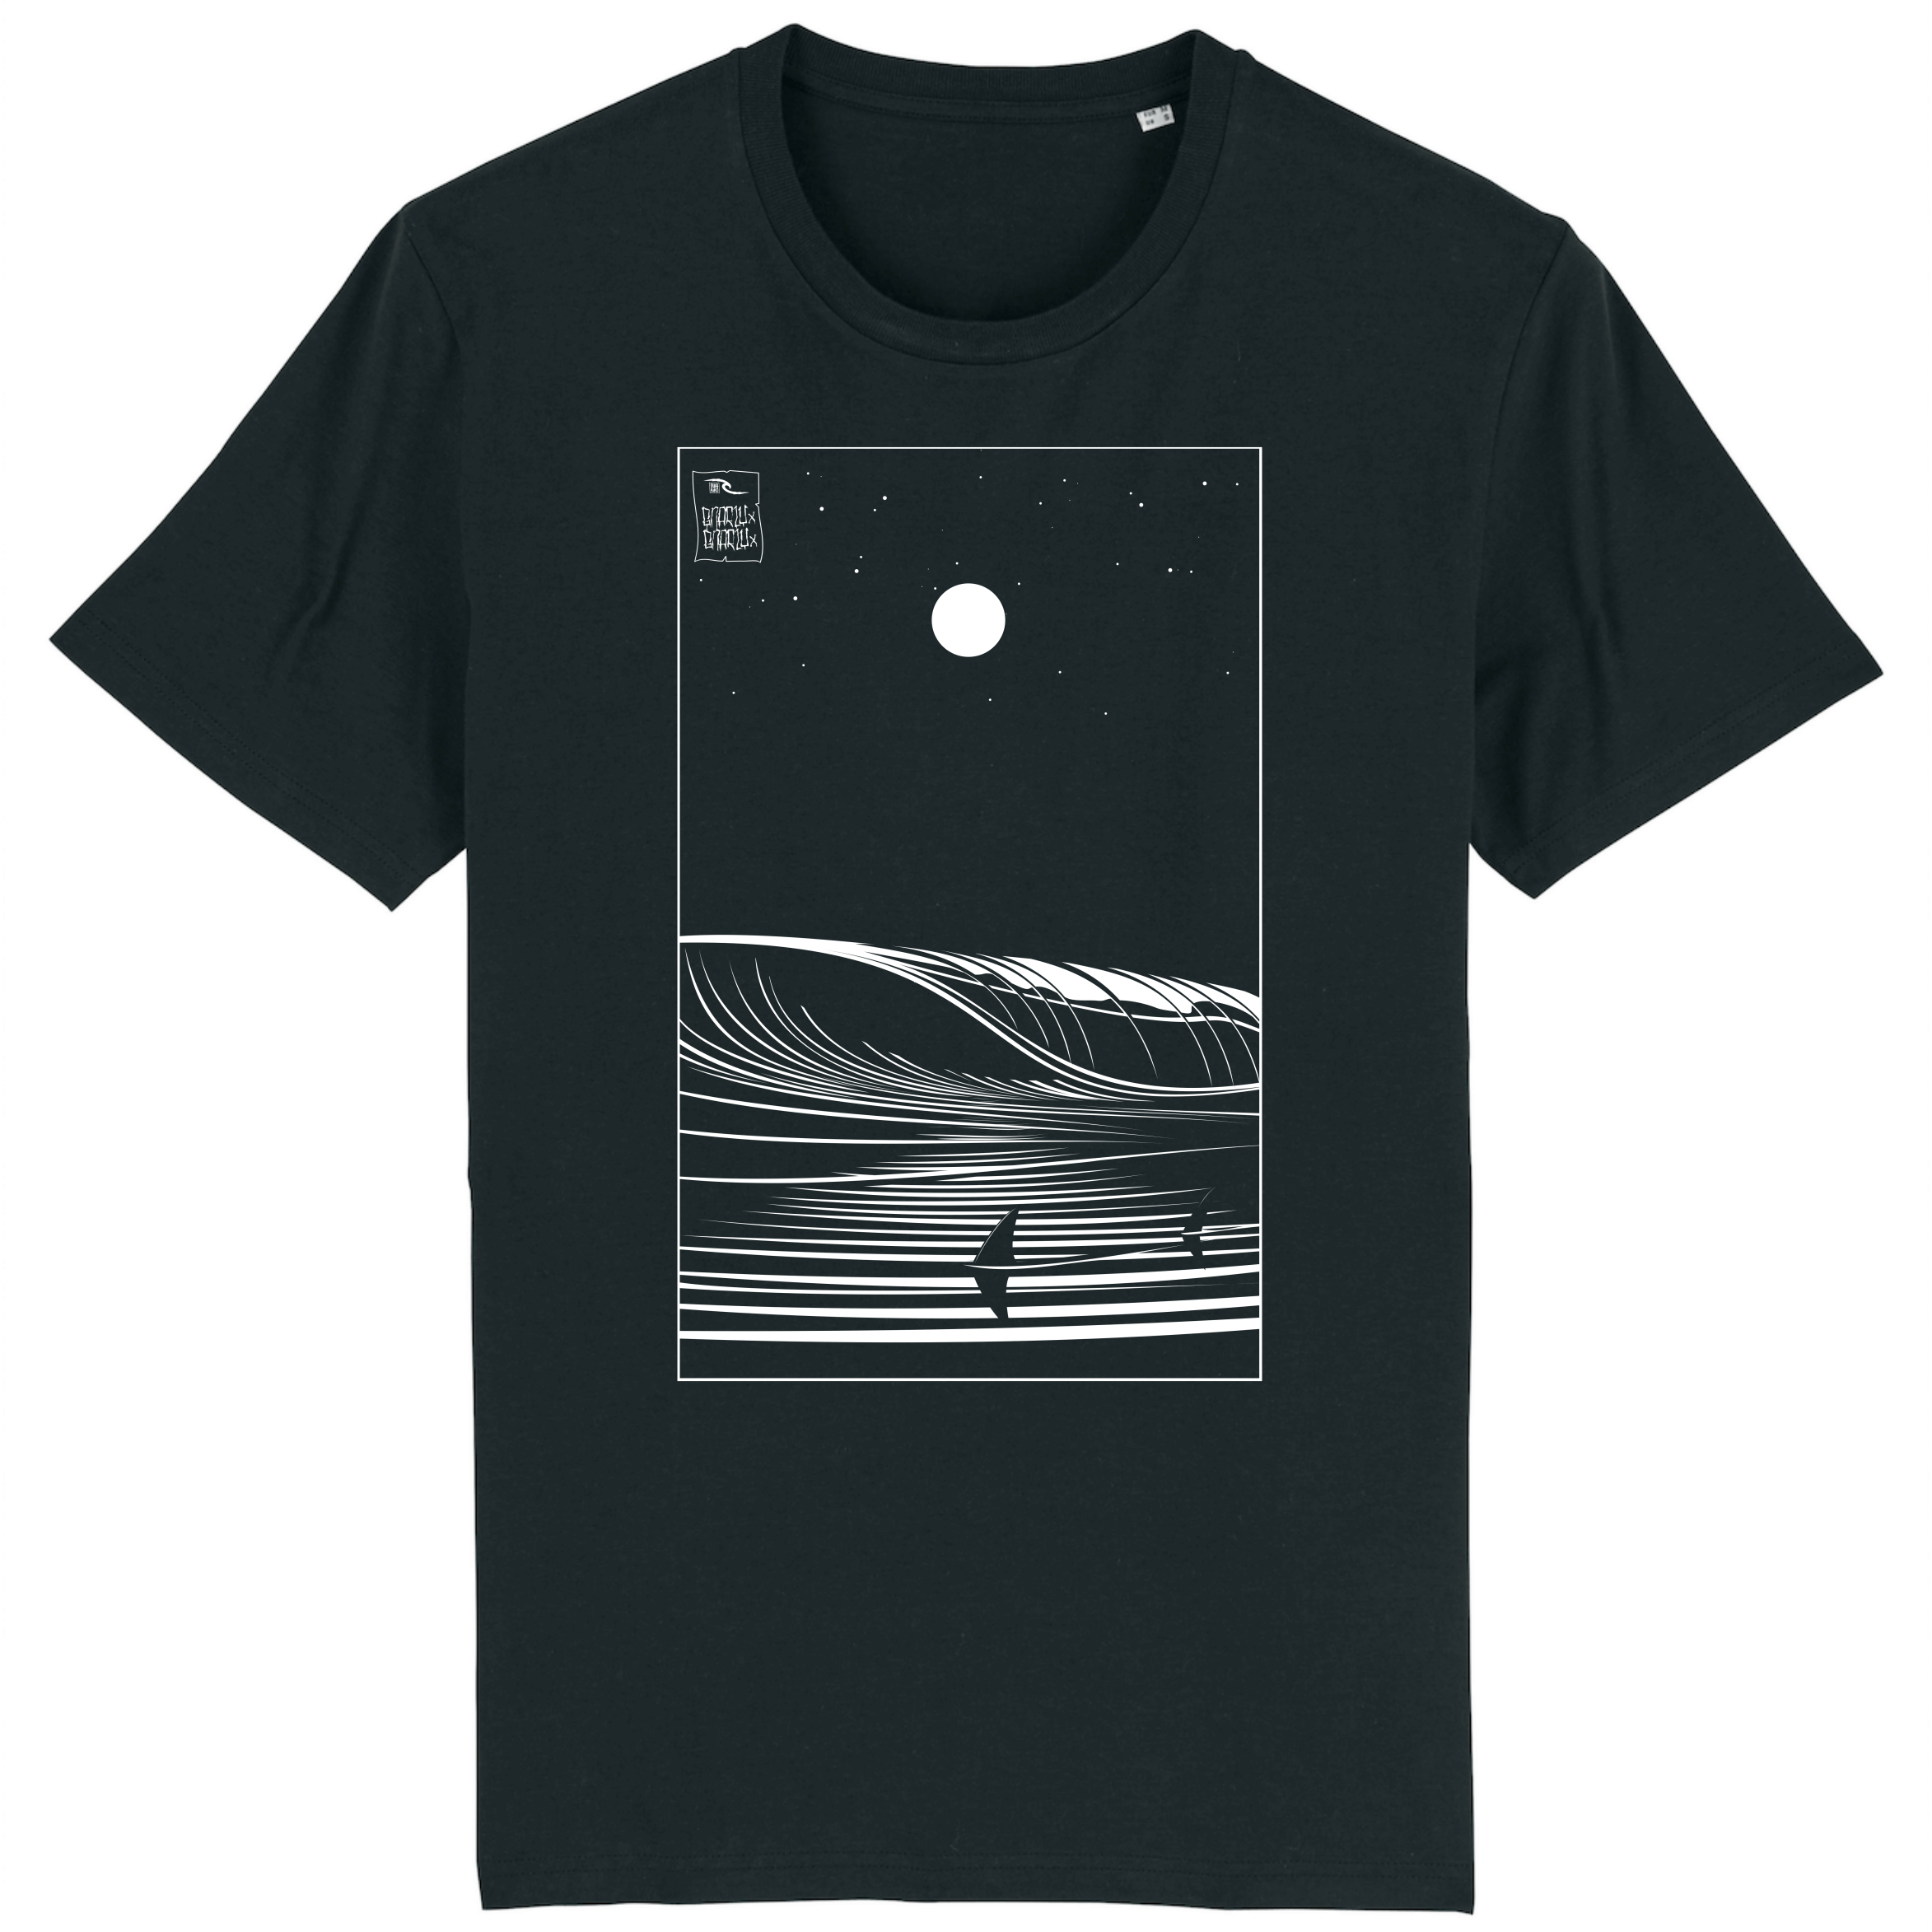 Zwart T-shirt met prachtig wit design van twee haaien in een golf bij volle maan